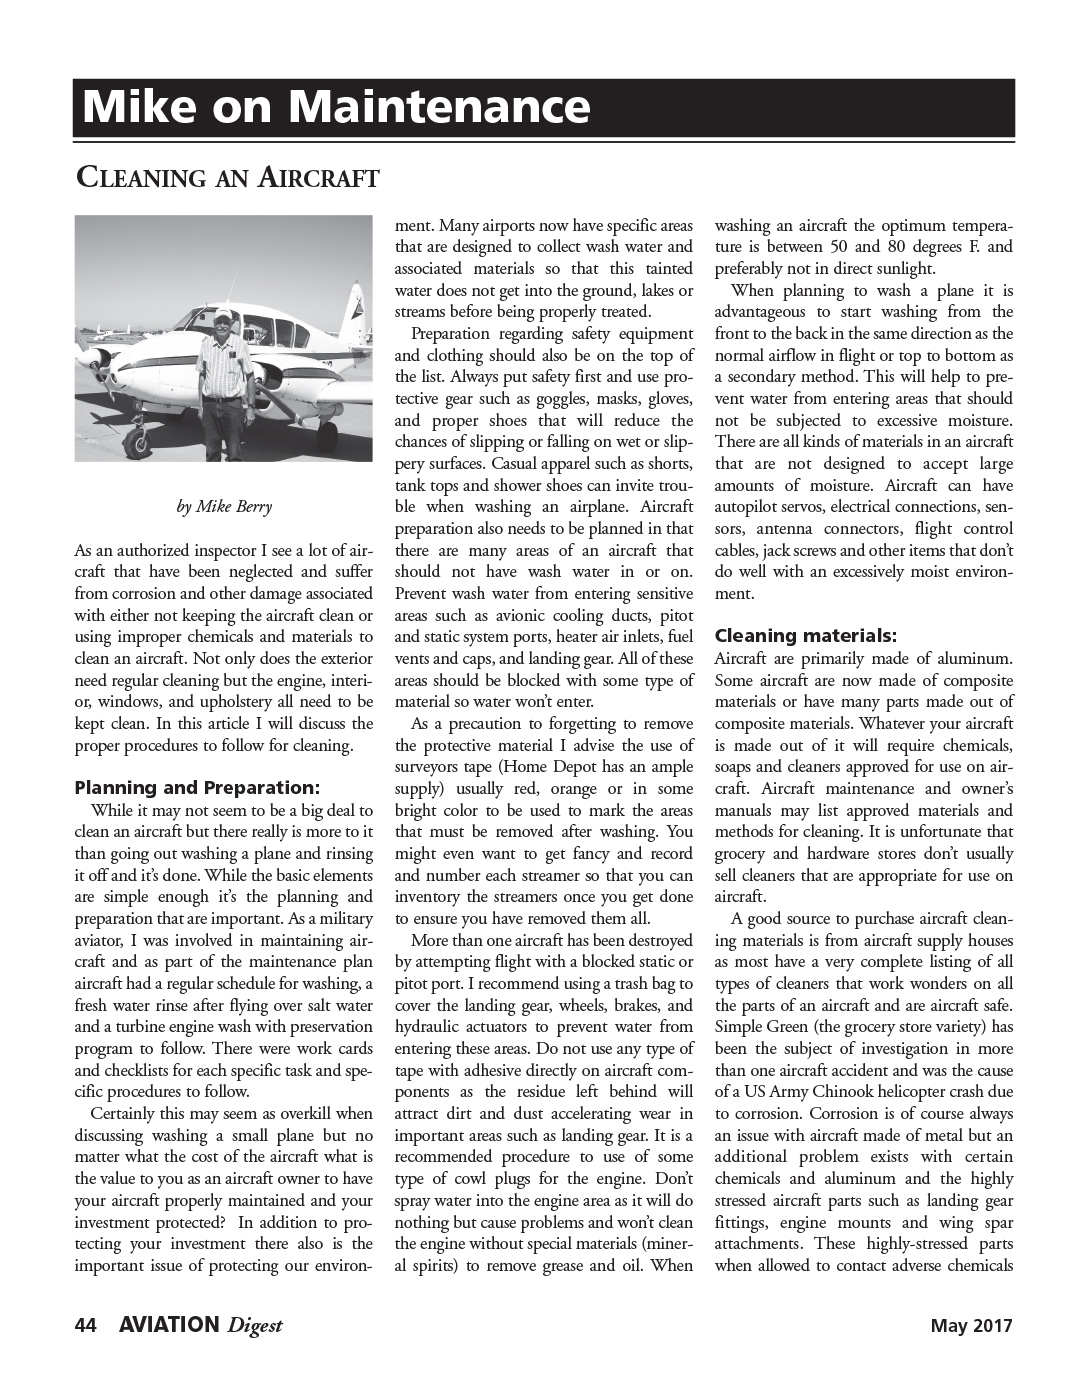 Aviation Digest